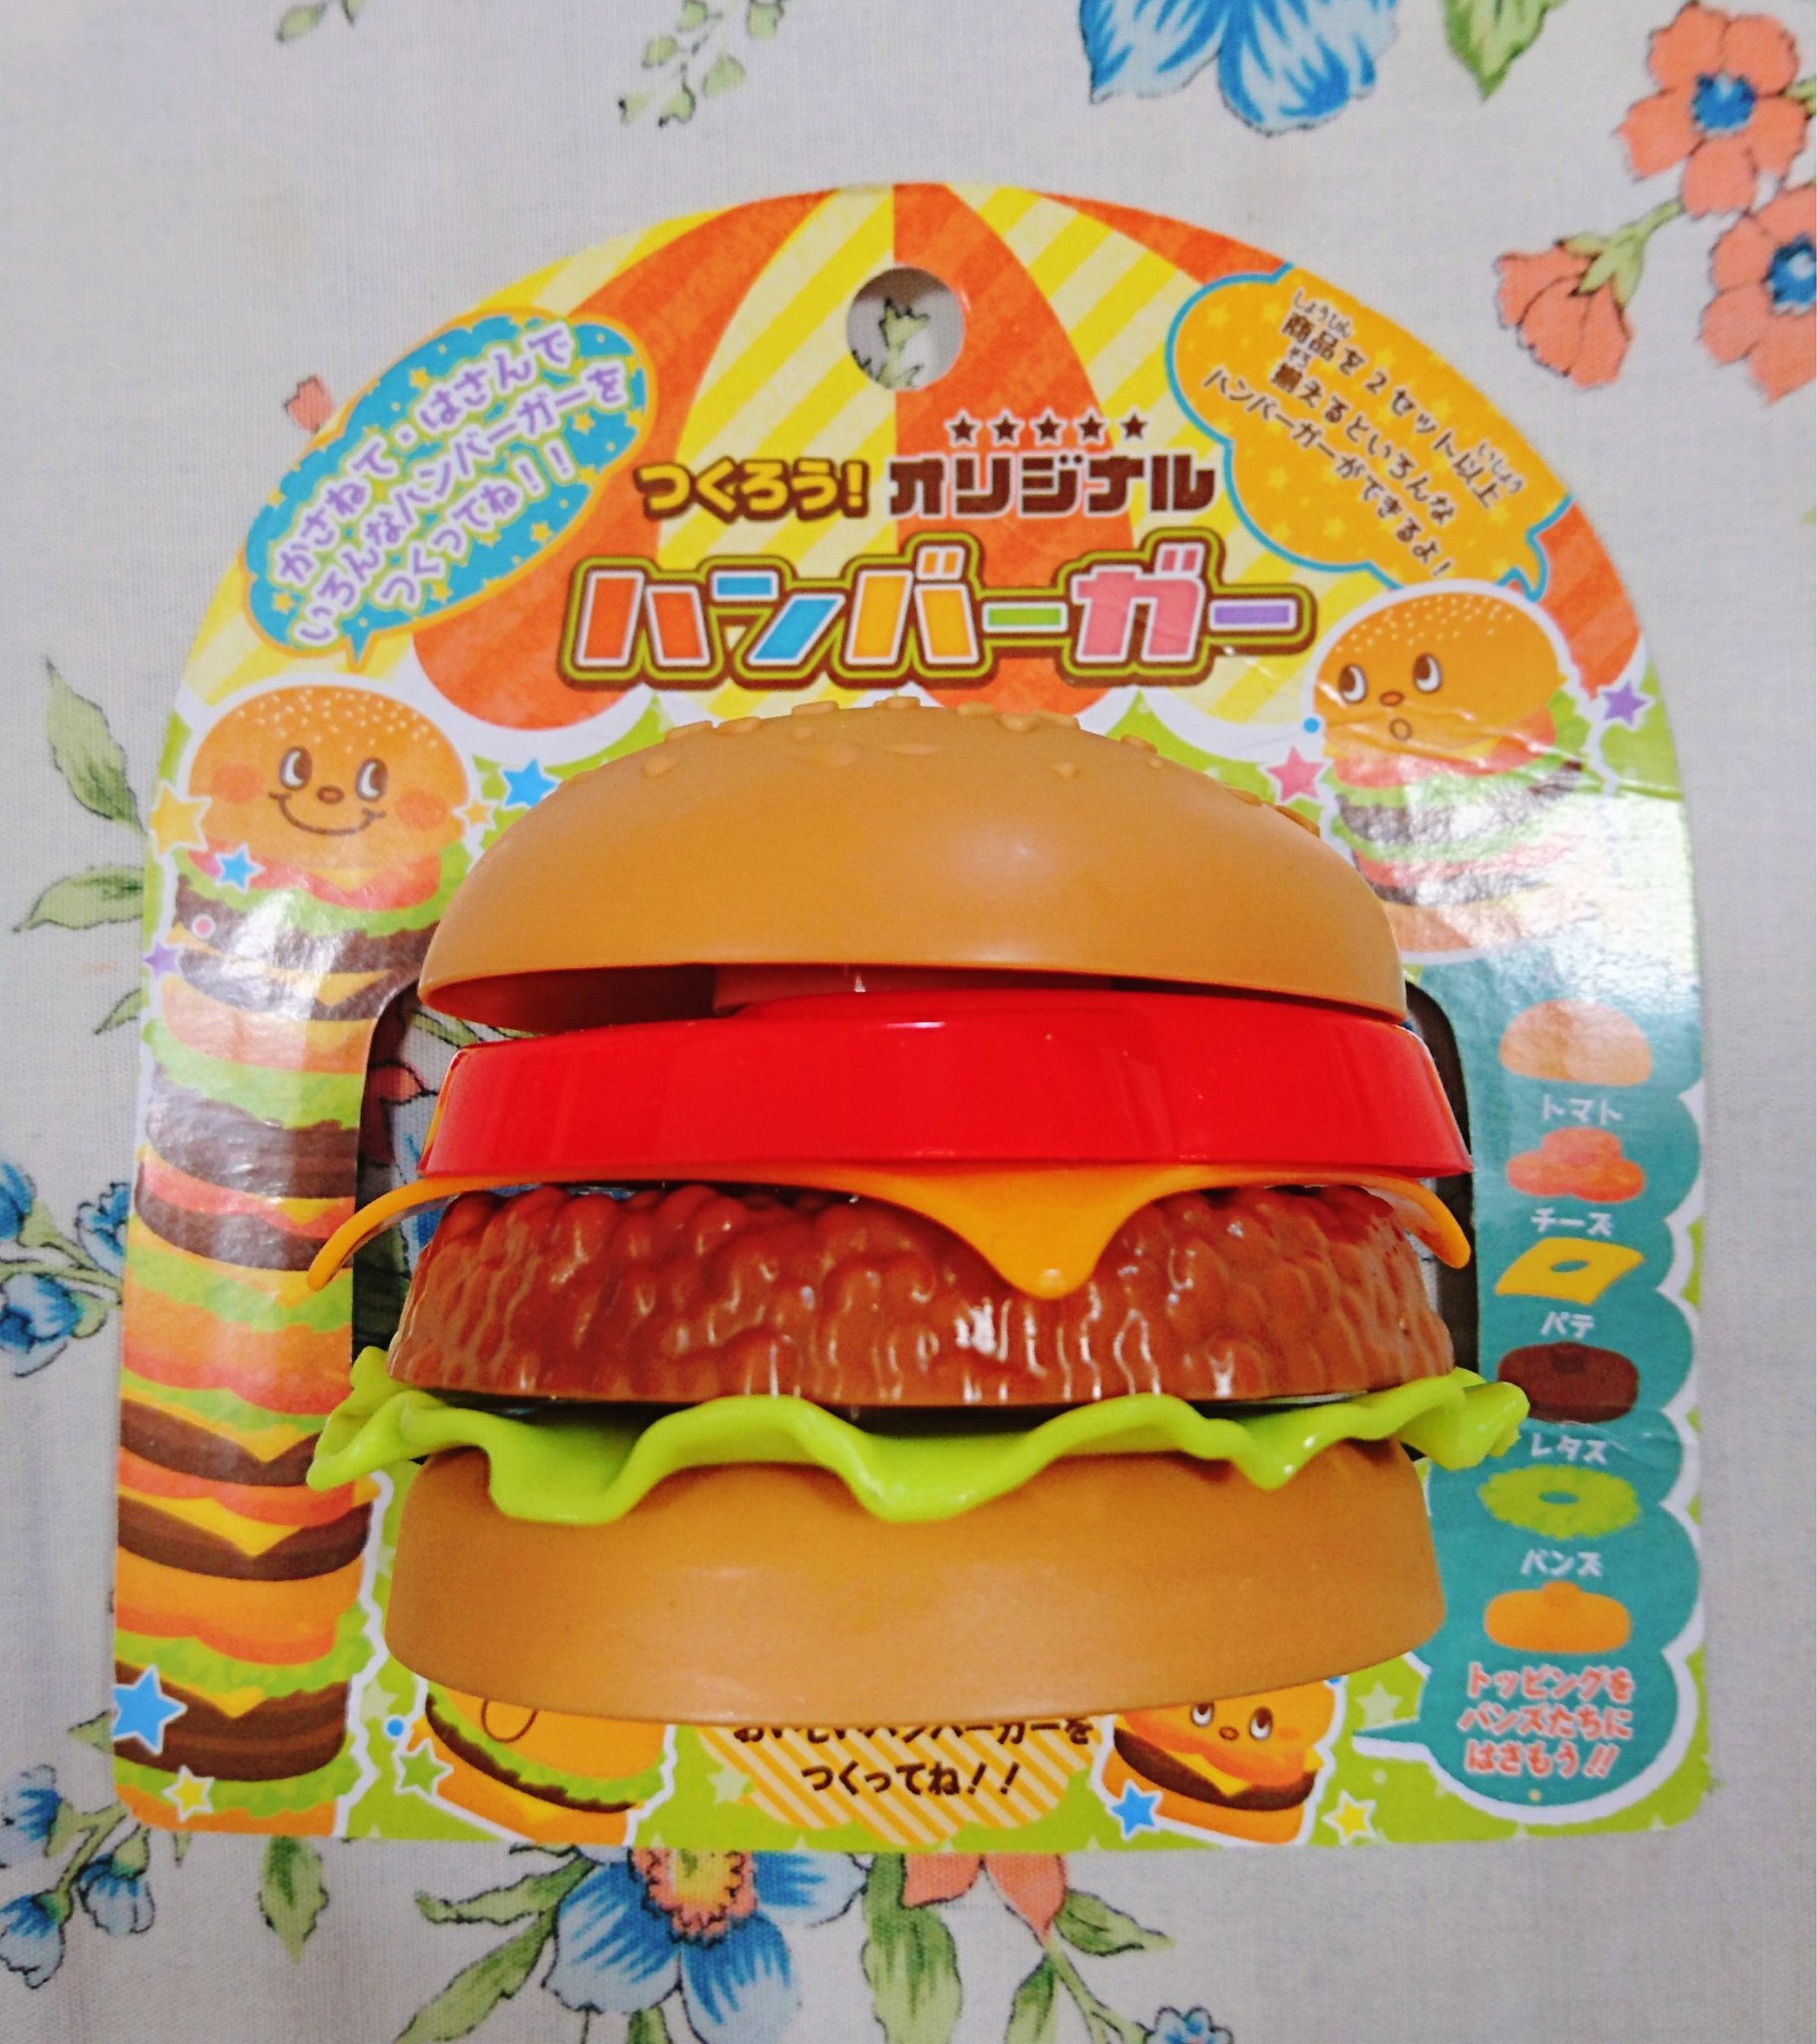 なにがし Nanigashi セリアで売ってた つくろう オリジナルハンバーガー というおもちゃ 3セット買ったので色んな ハンバーガーができて楽しい